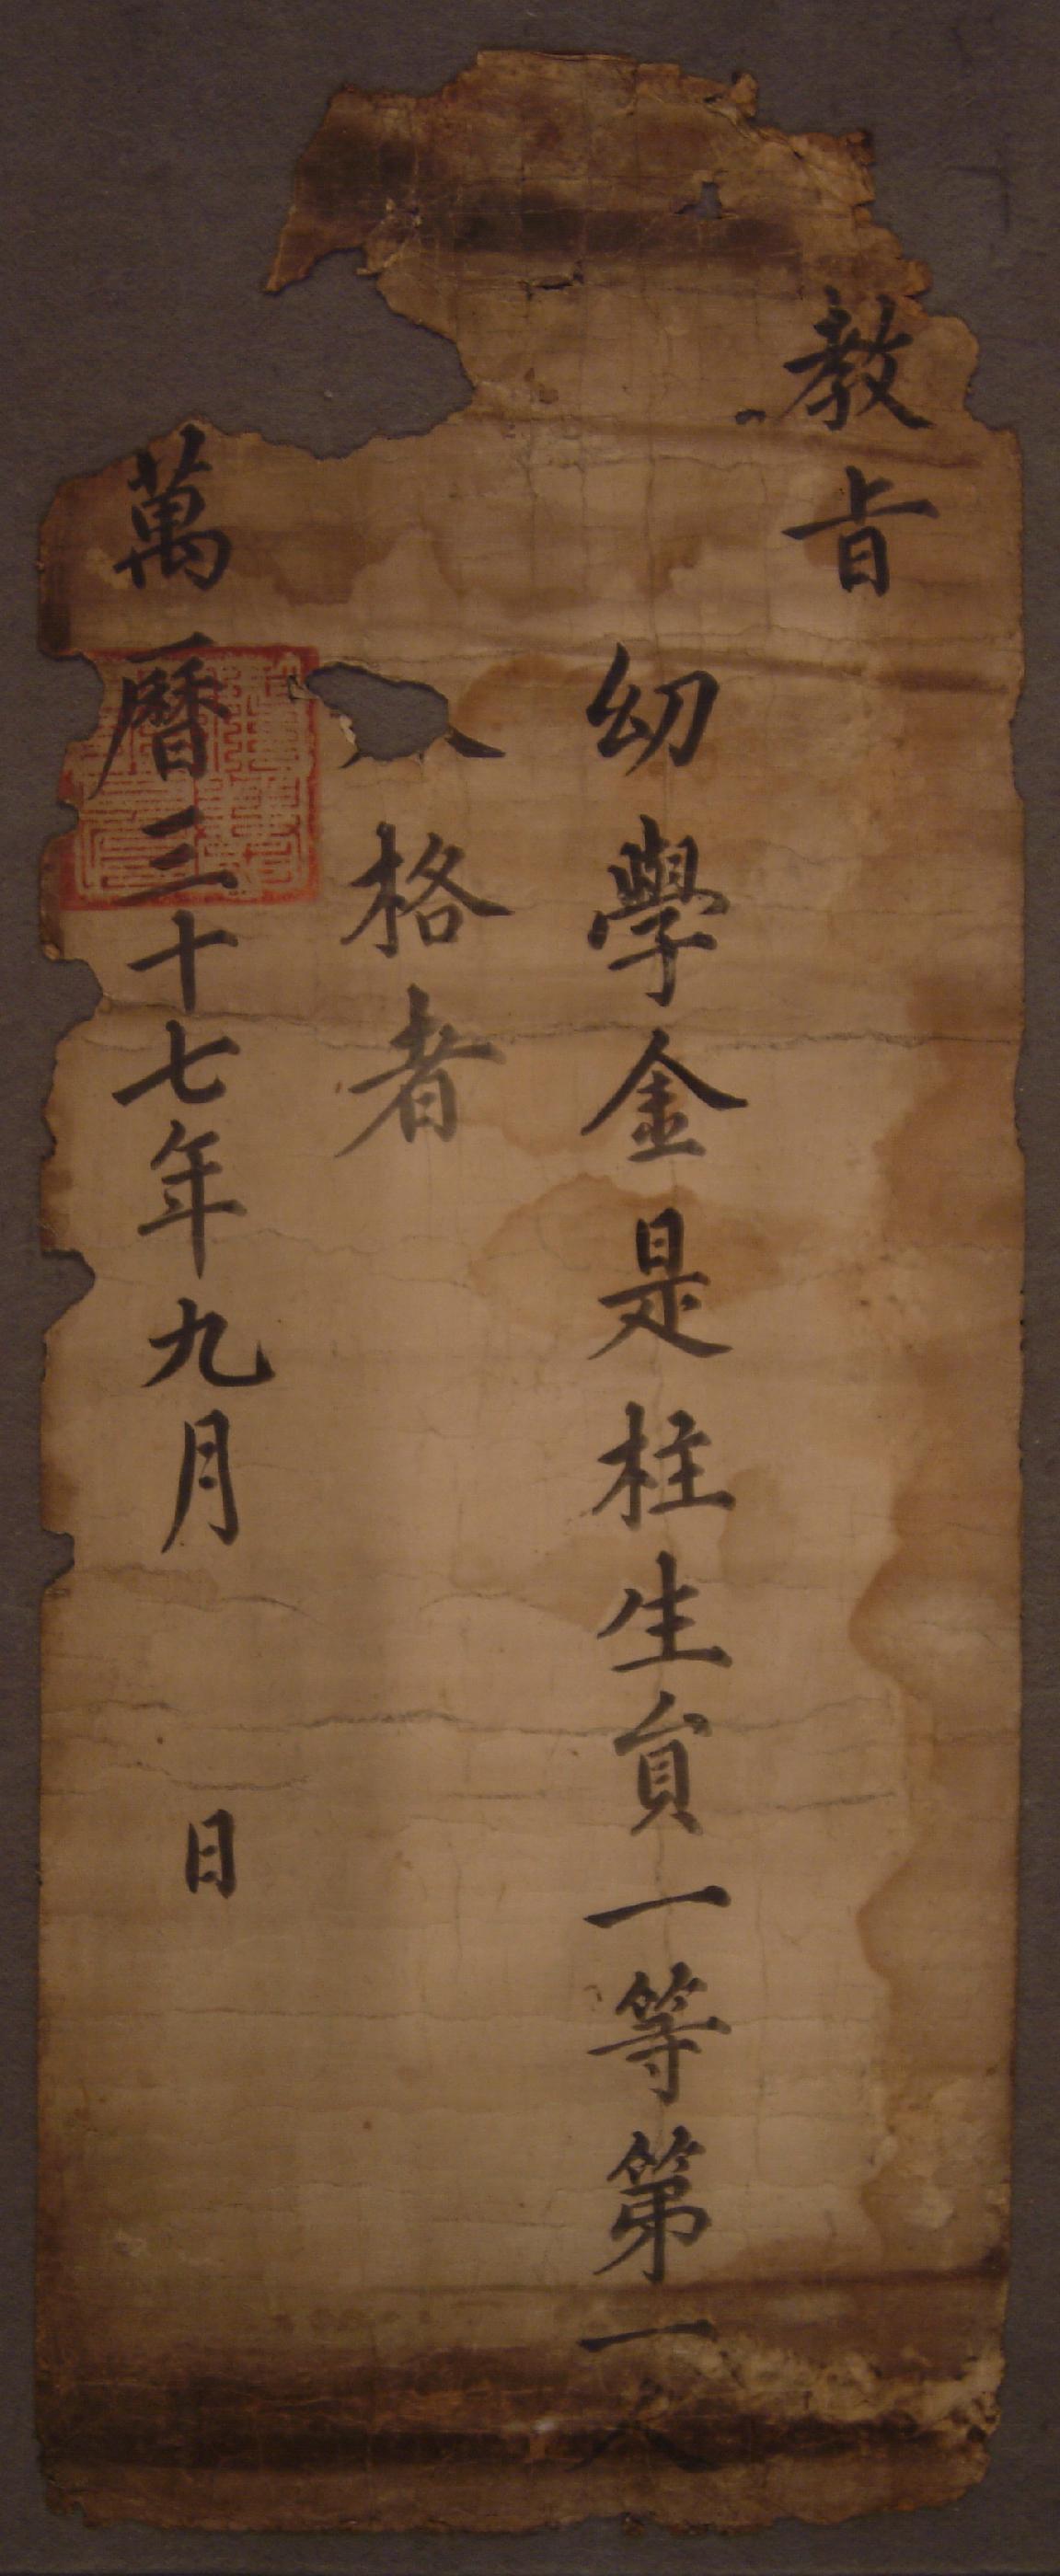 발급자미상이 1609년에 유학 김시주에게 내린 백패